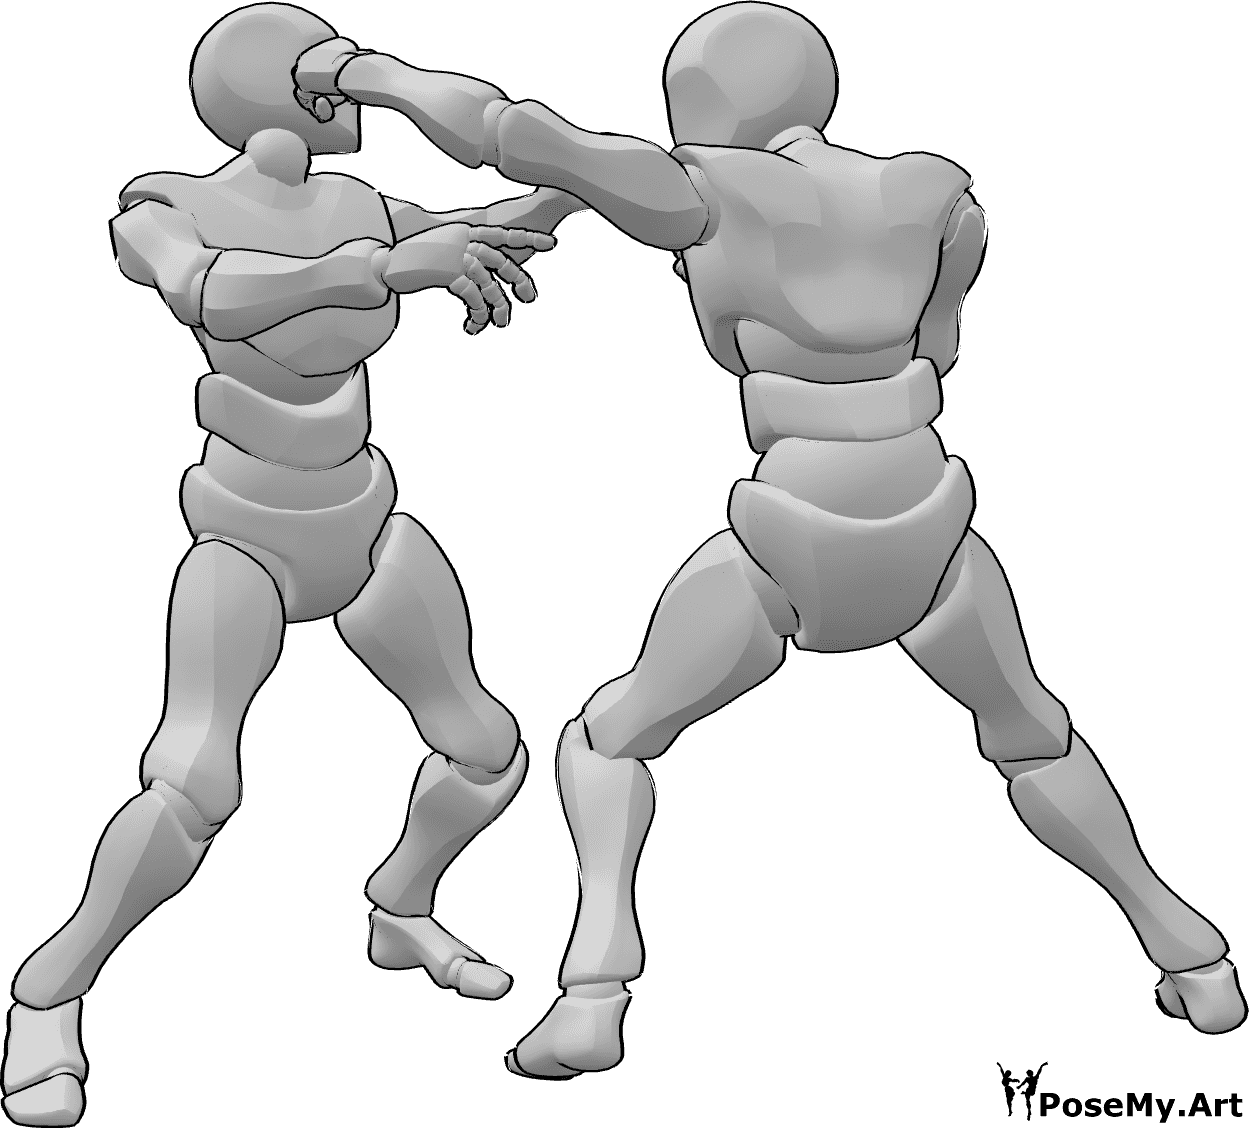 Riferimento alle pose- Posizione del pugno alla testa - I maschi stanno lottando, uno colpisce l'altro alla testa.